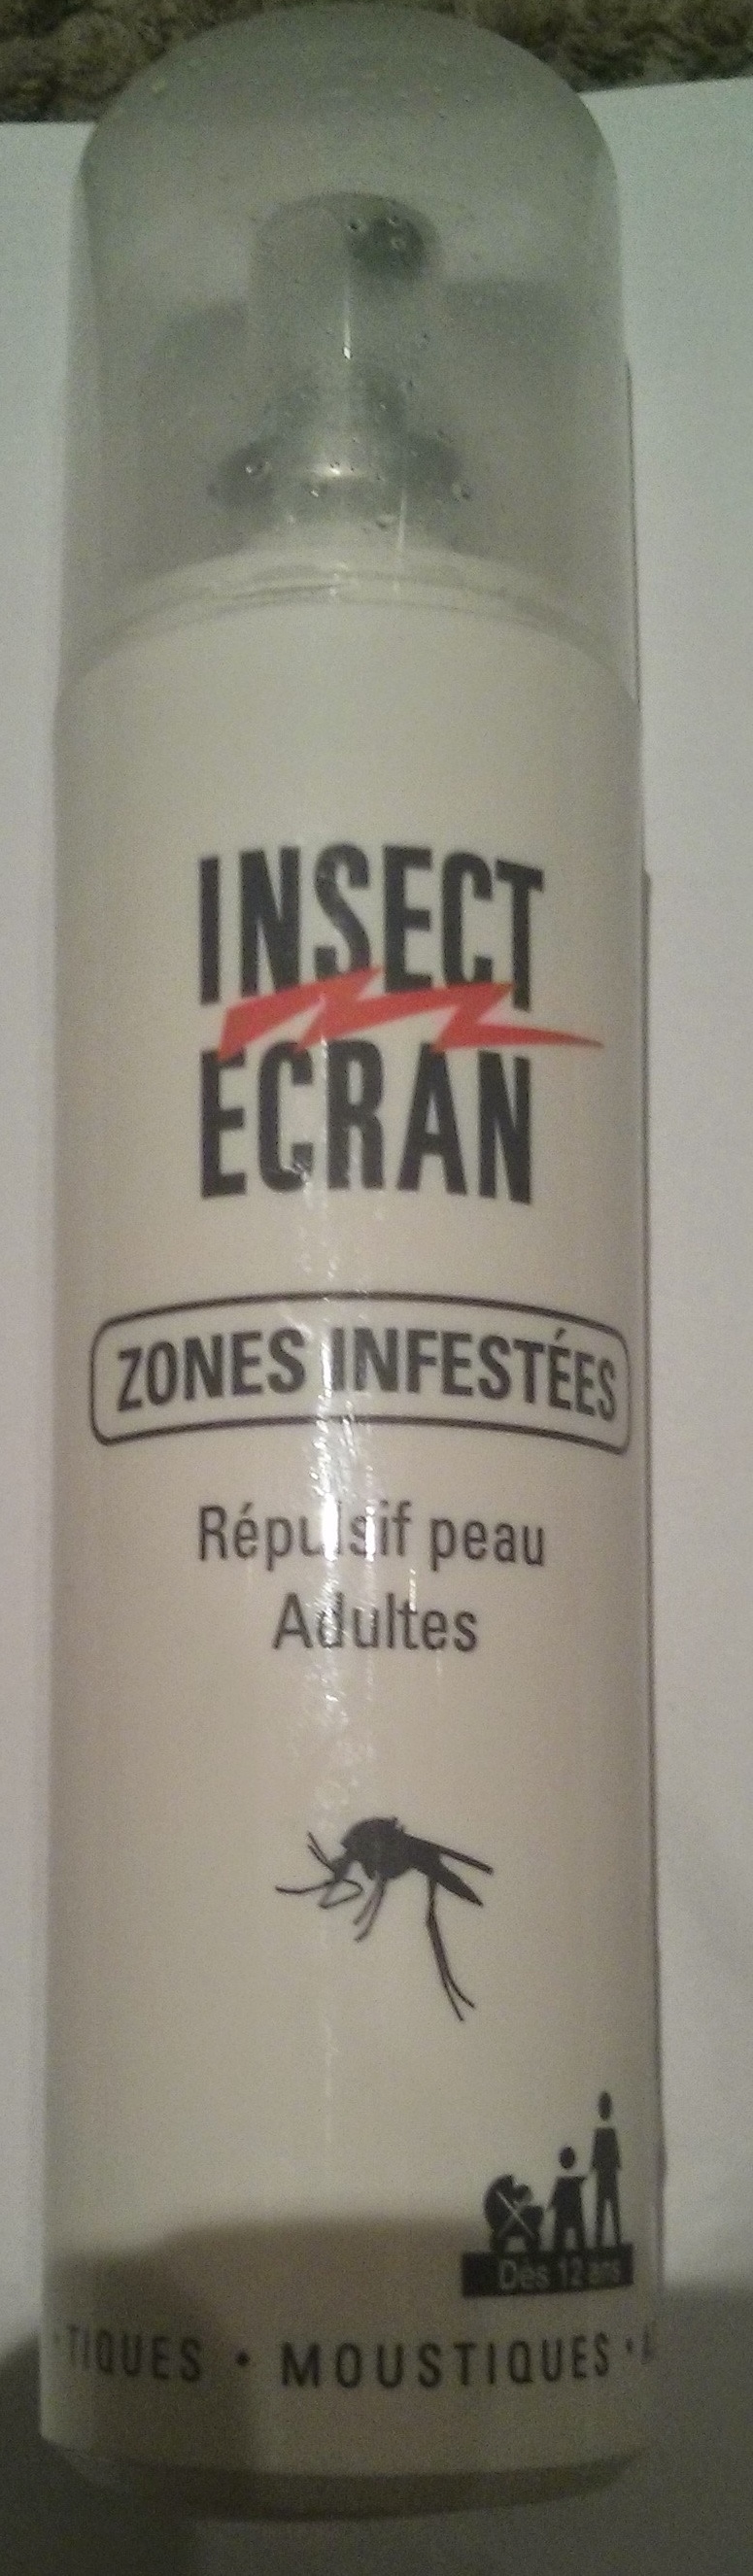 Insect Ecran Répulsif peau Adultes - Produto - fr